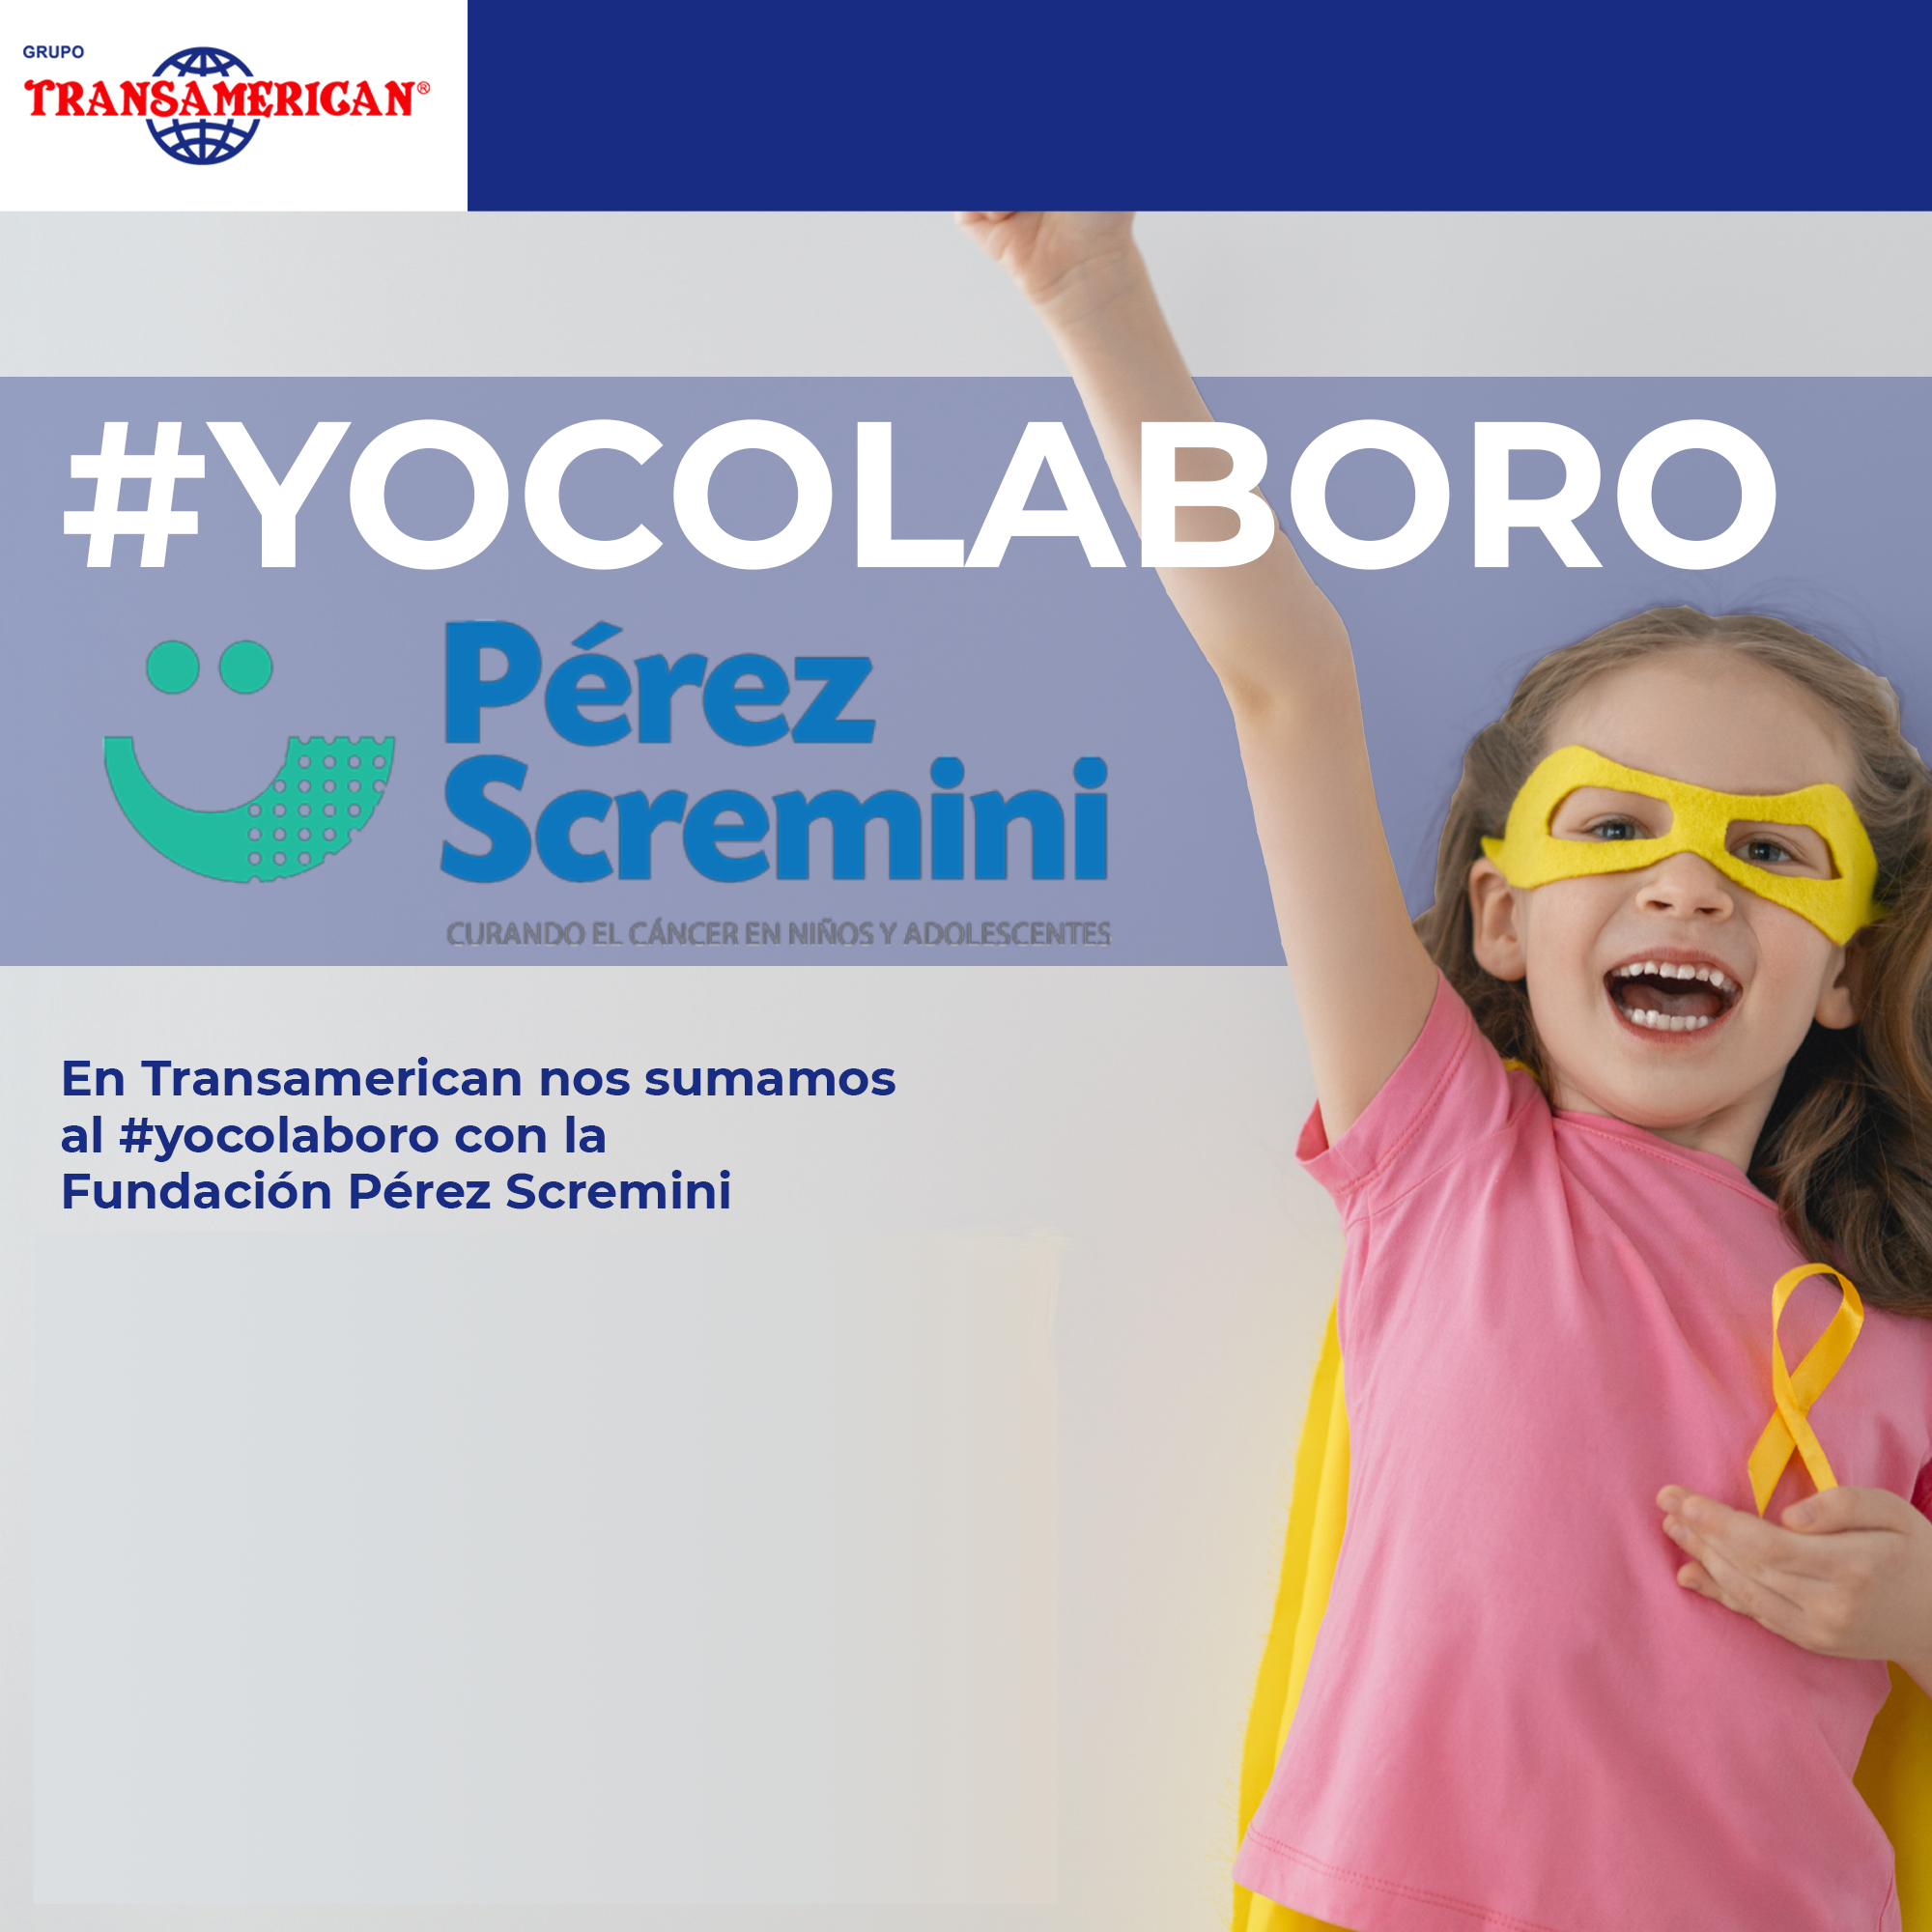 #YoColaboro con la Perez Scremini